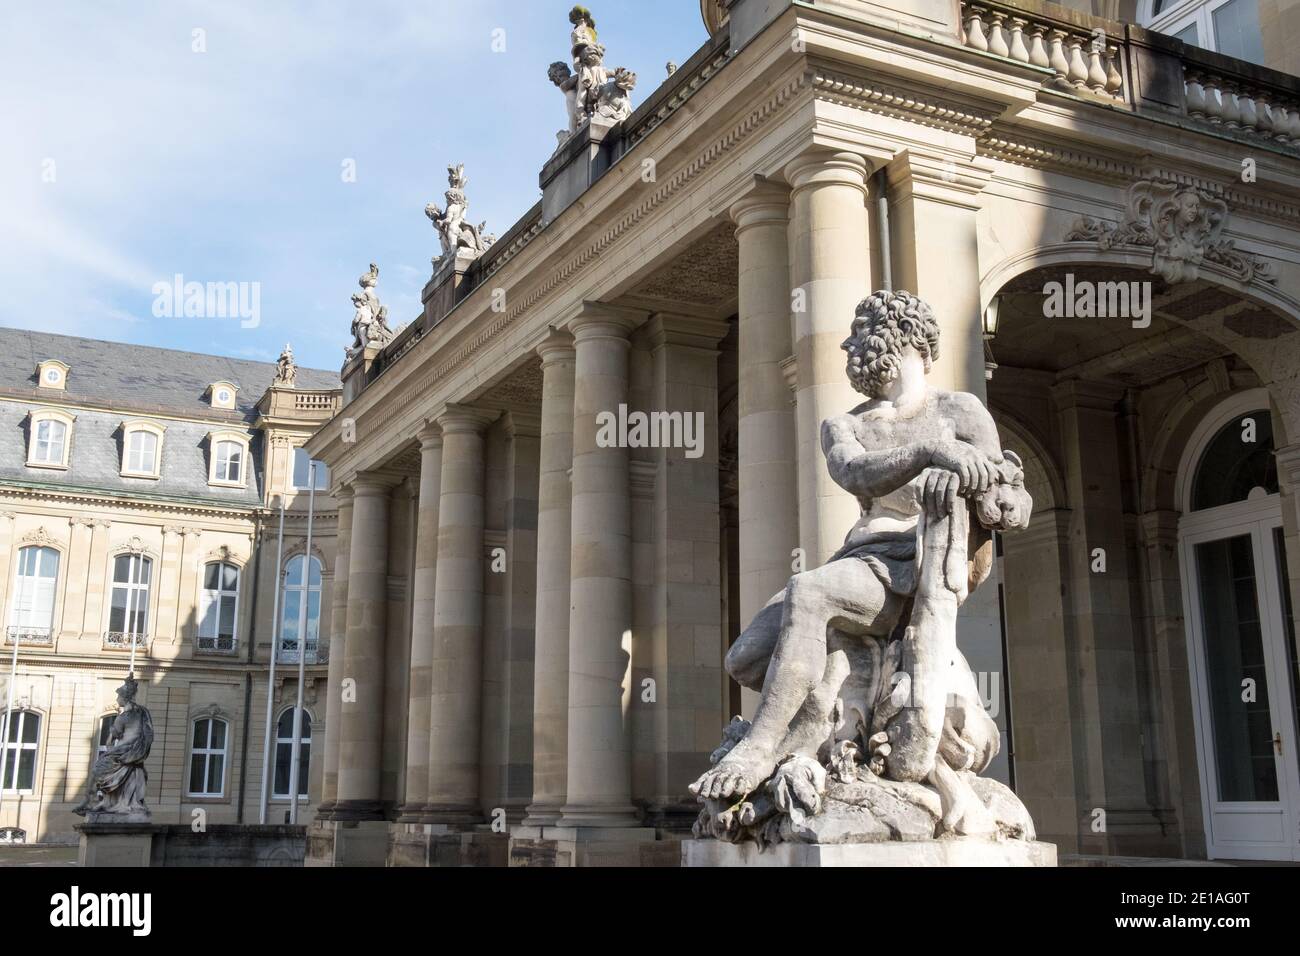 Le New Palace ( Neues Schloss ) qui se trouve sur Schlossplatz, à Stuttgart - Allemagne Banque D'Images